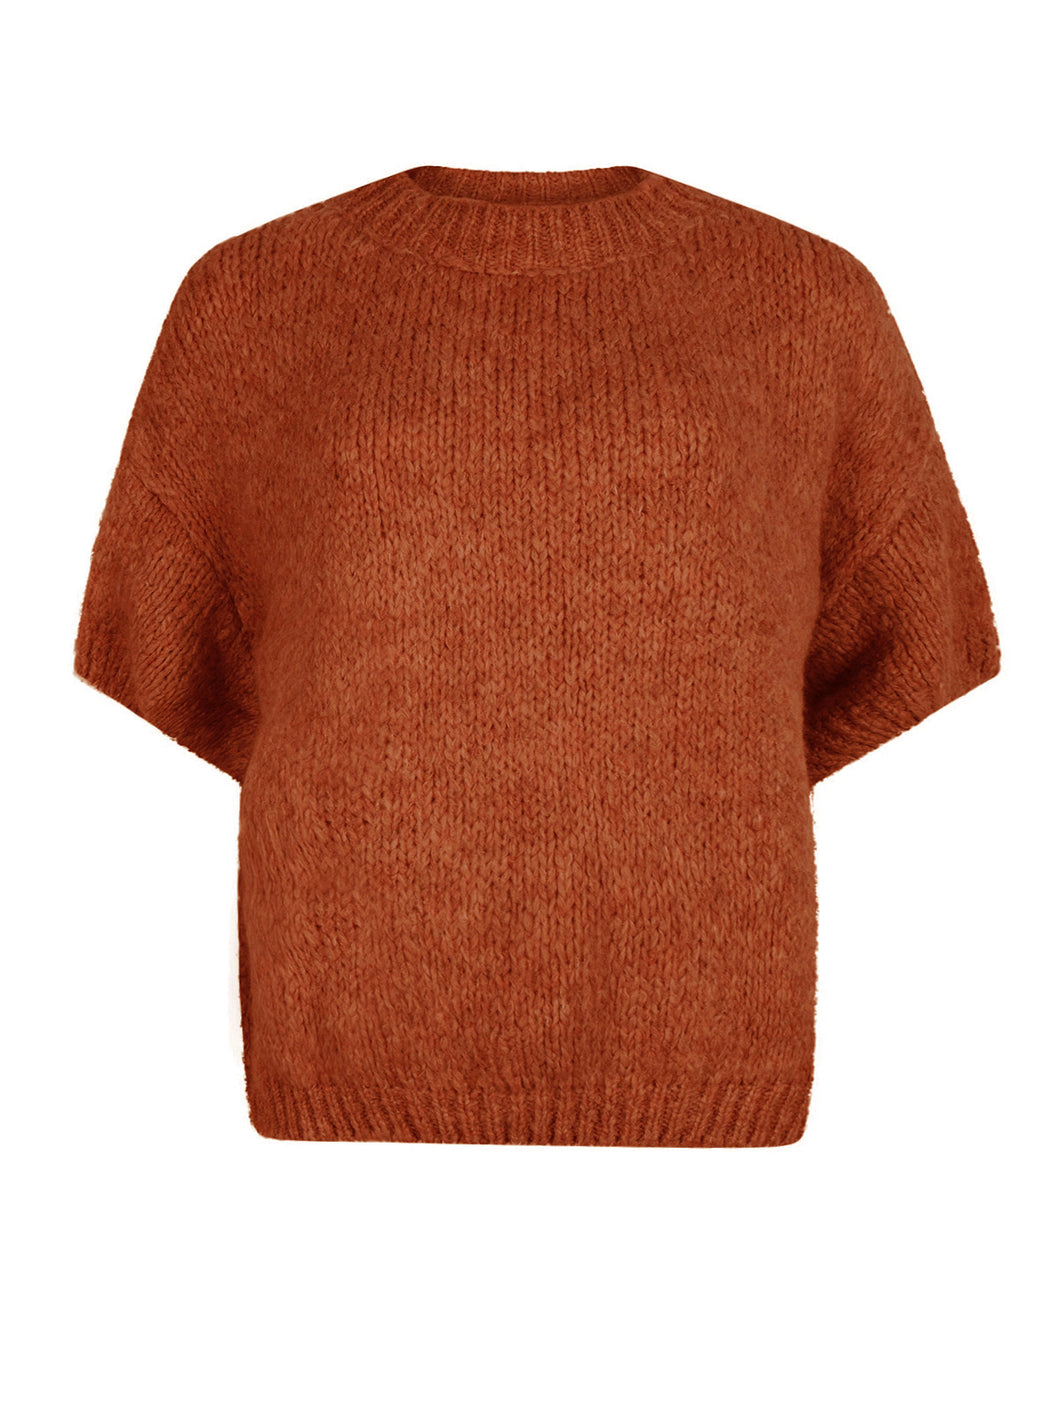 Trui Babe is een gebreide trui met korte mouwen. De trui is verkrijgbaar in één maat, draagbaar voor maat S/M/L. En is verkrijgbaar in verschillende kleuren: beige, lila, brique.